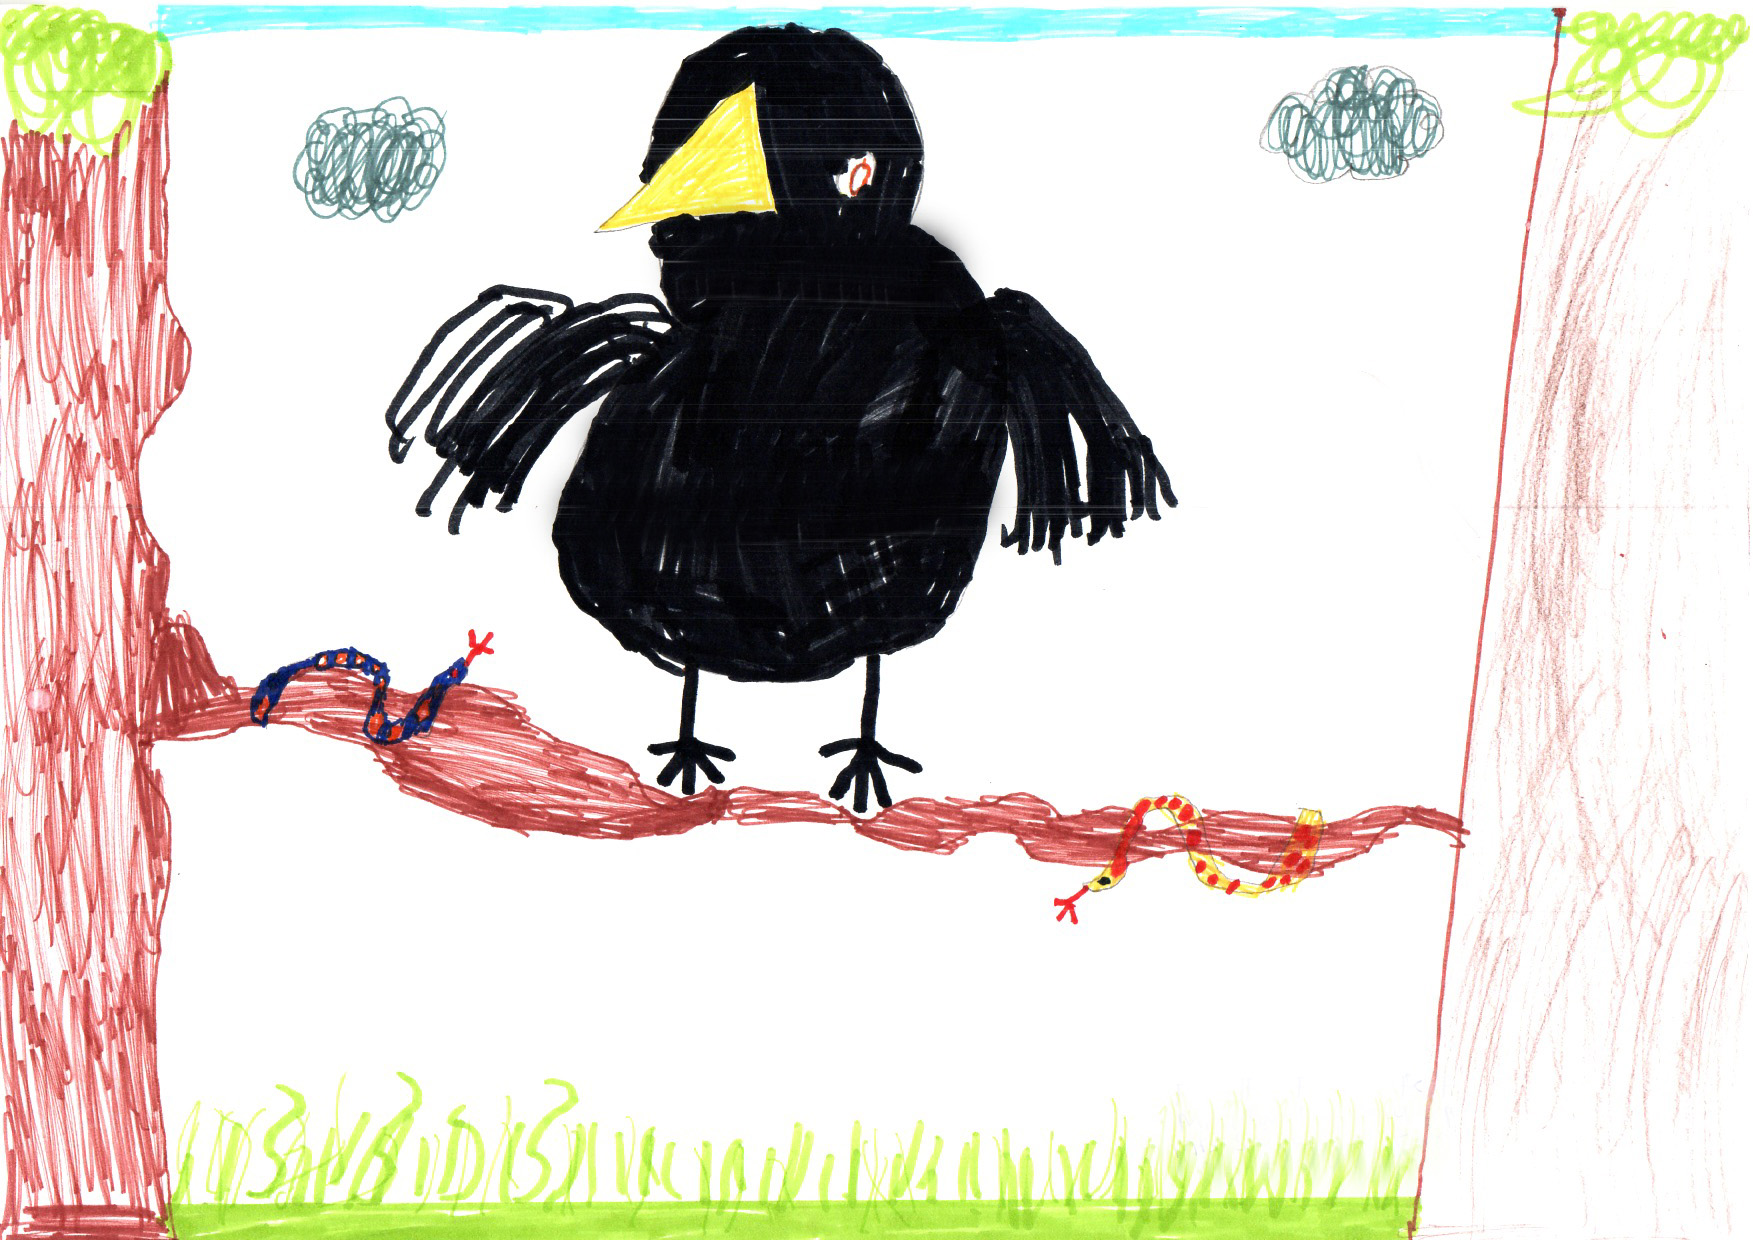 Above: "My Favourite Bird" by Fergus Kerwick (Yr 4, Marown School)